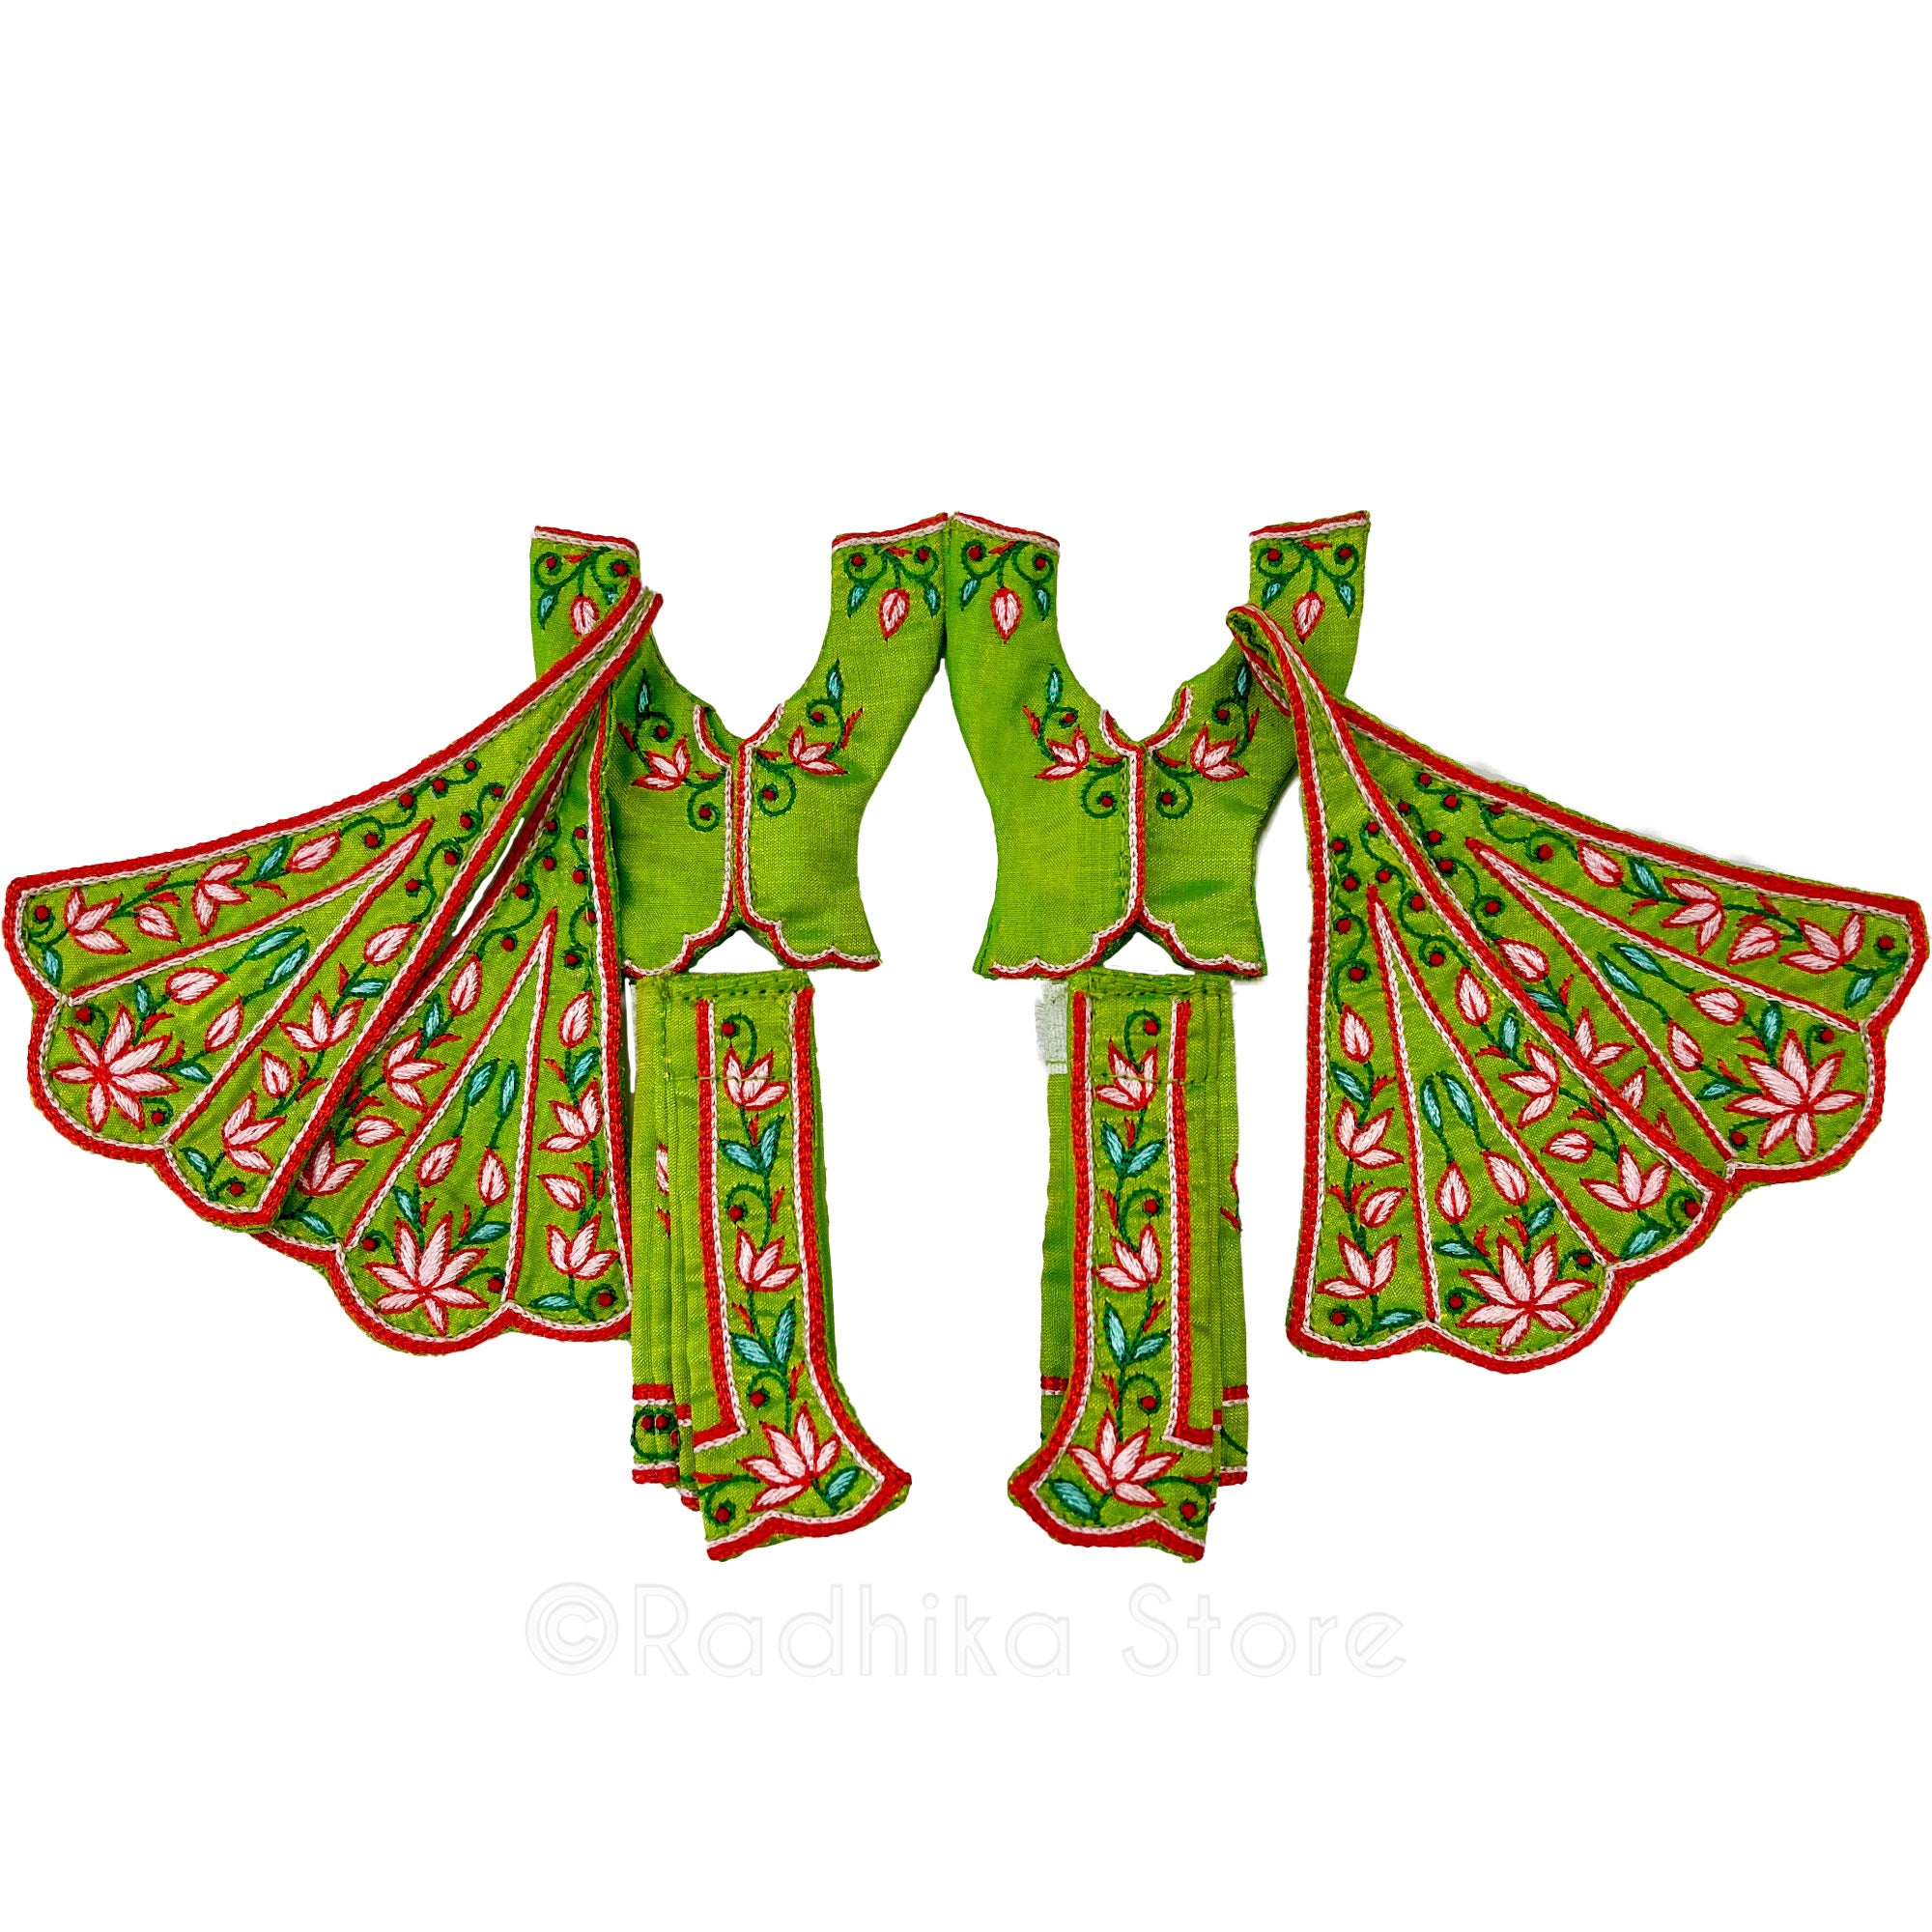 Prem Sarovara Lotus - All Silk - Pond Green - Gaura Nitai Deity Outfit